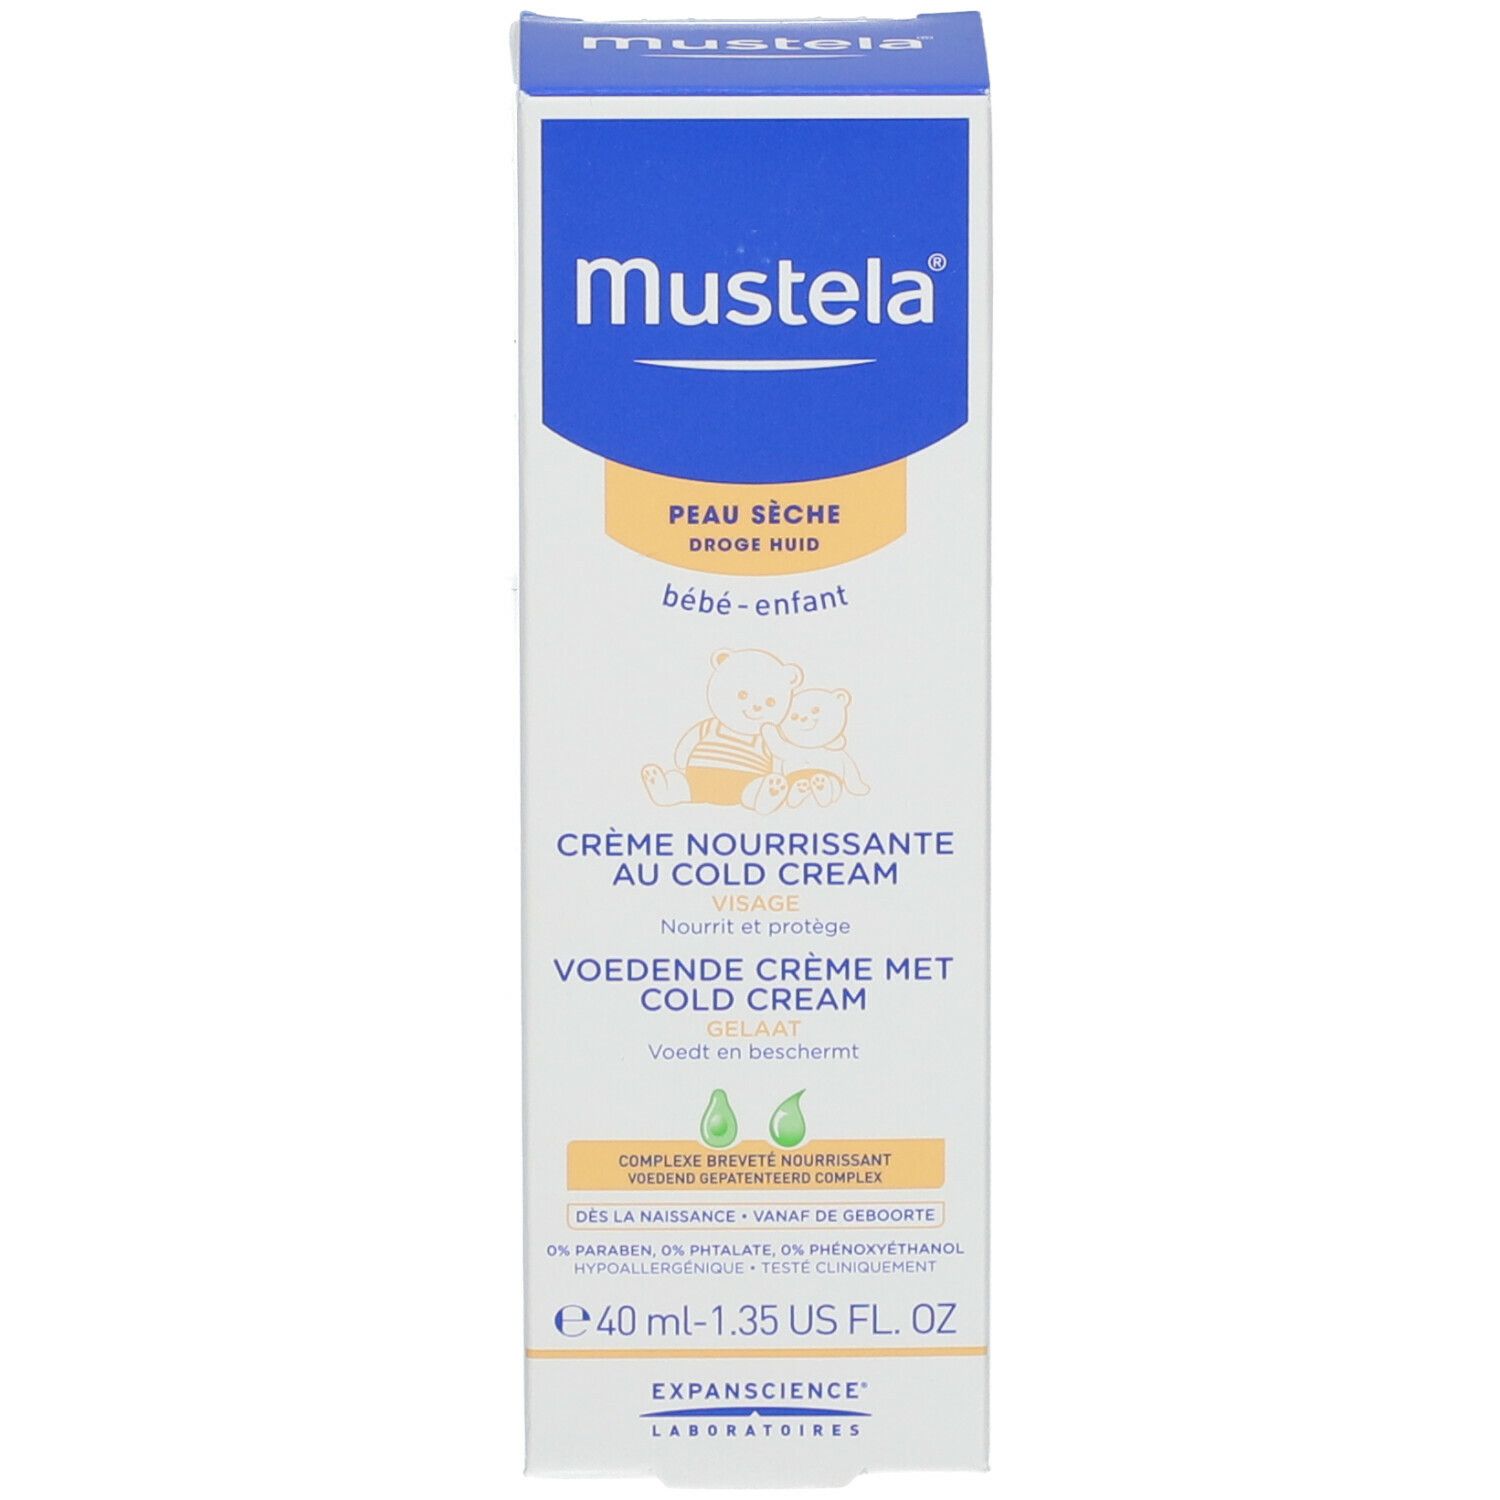 Mustela® Crema Nutriente Alla Cold Cream